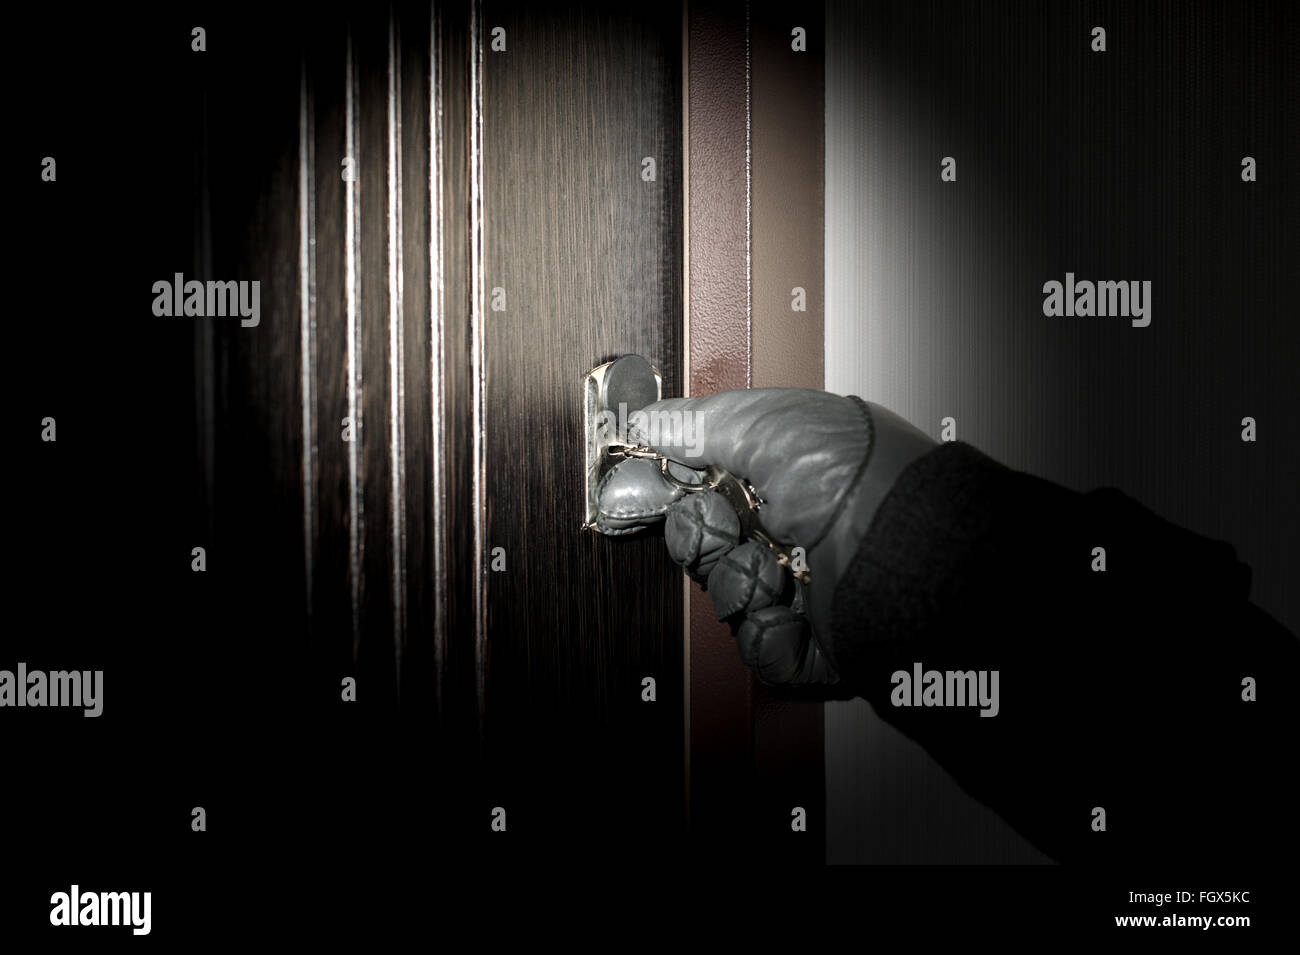 Villano abre el apartamento el robo durante la noche Foto de stock